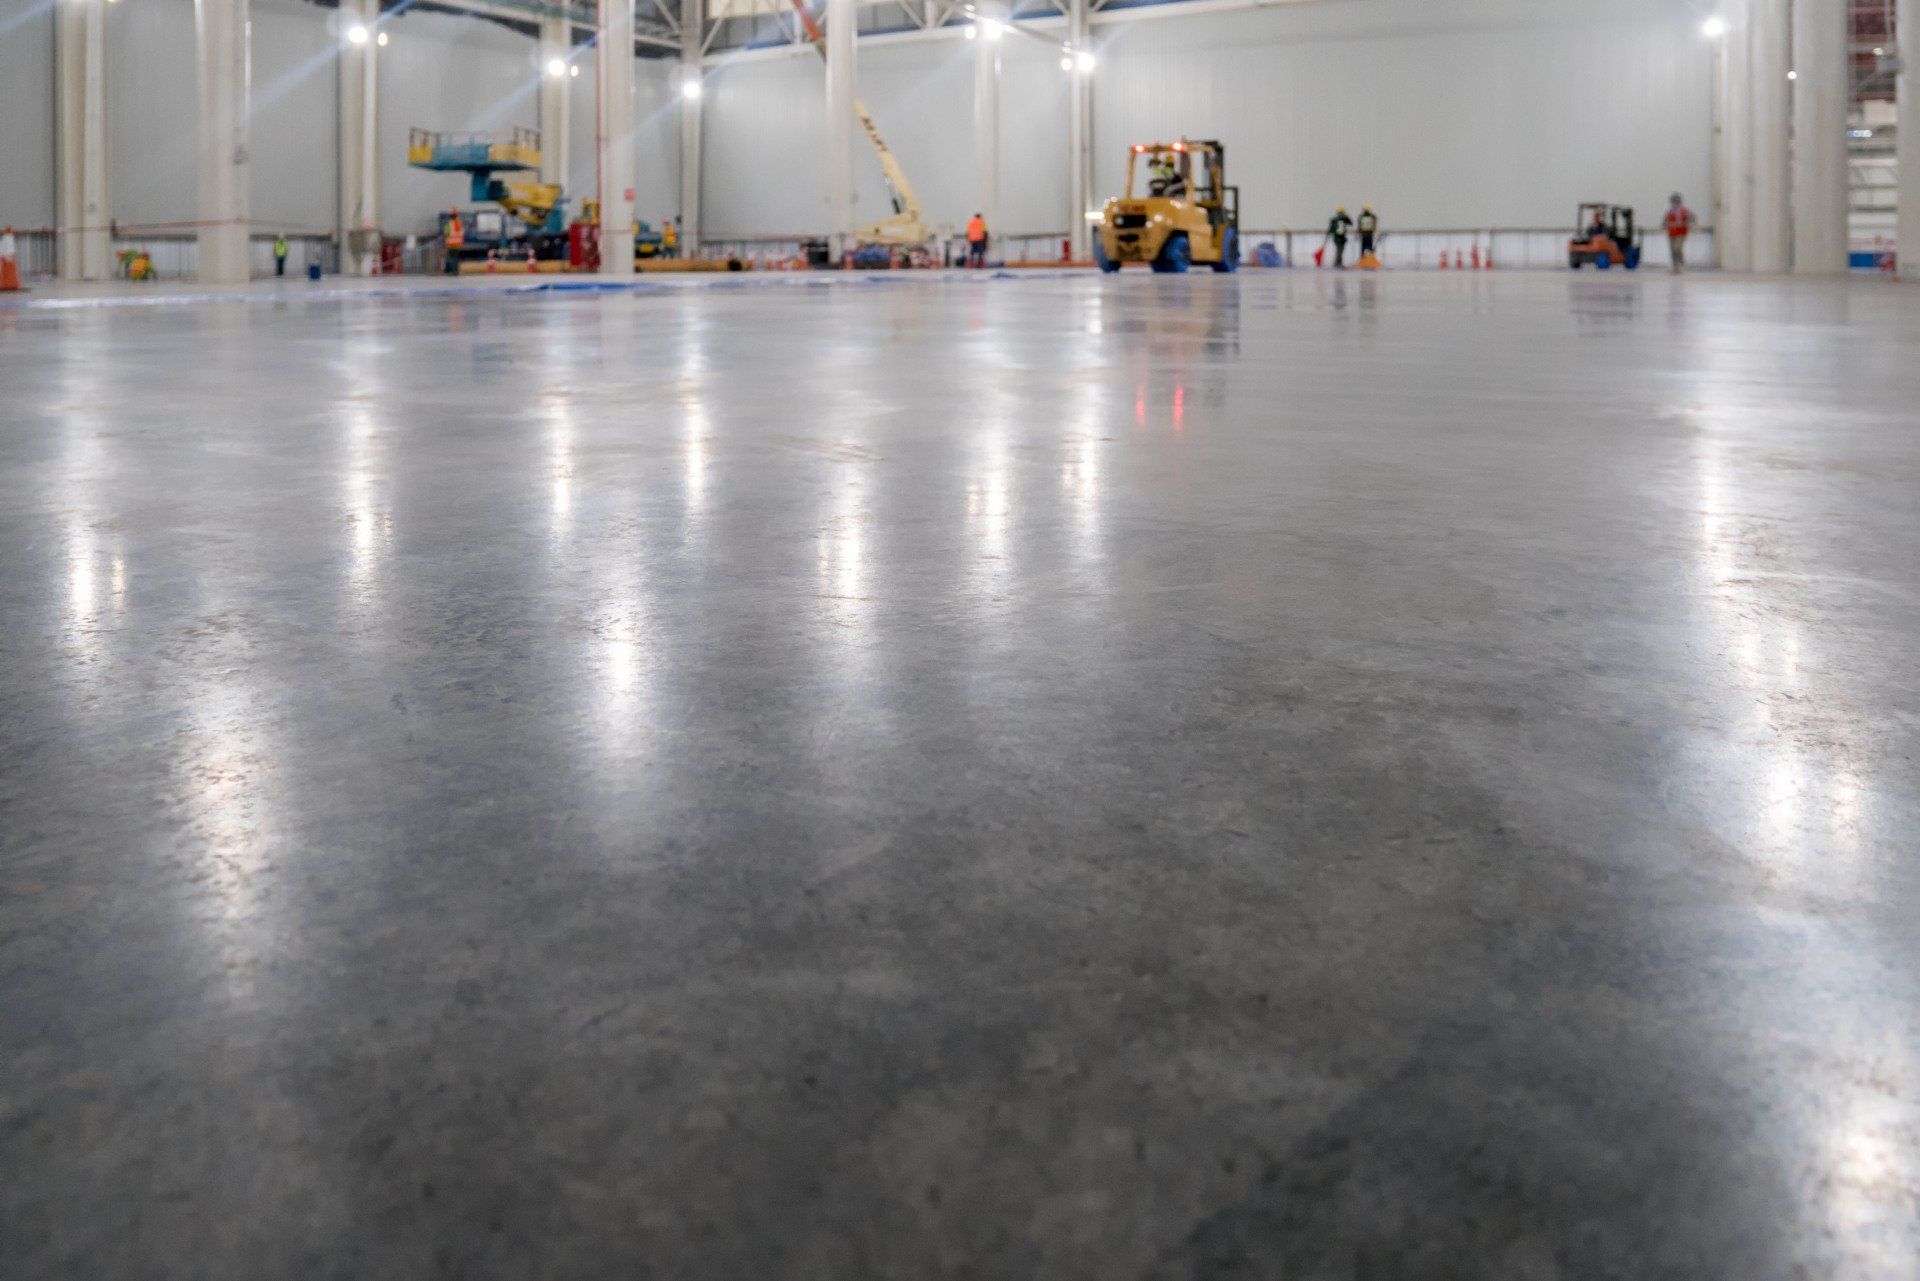 epoxy floor coating